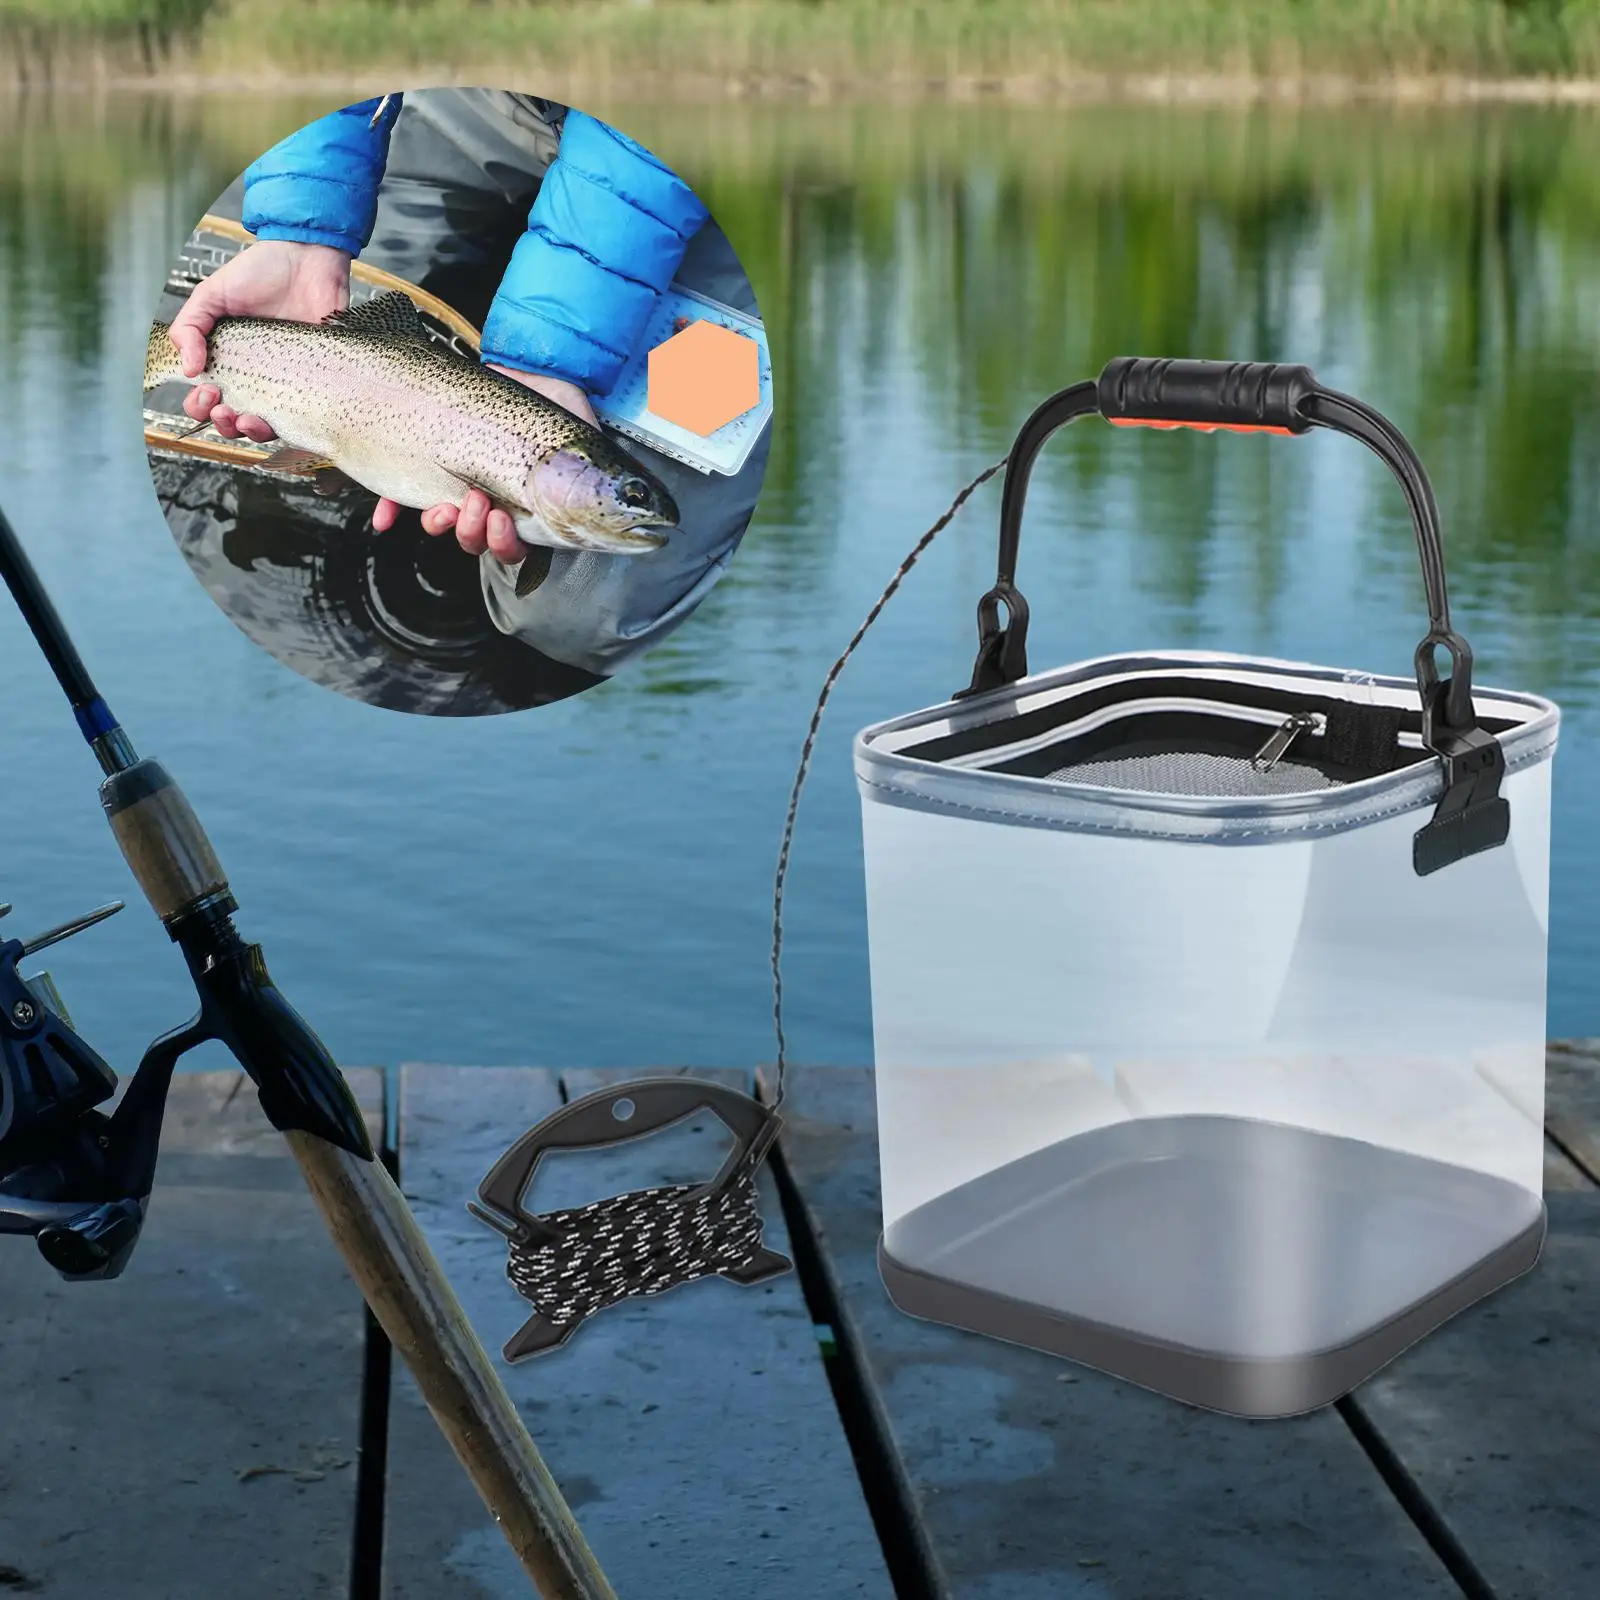 Rybaření kbelík lehoučké W/ ovládat odolný skládací rybaření kbelík voda kontejner pro zahradnické rybaření cestování outdoorové